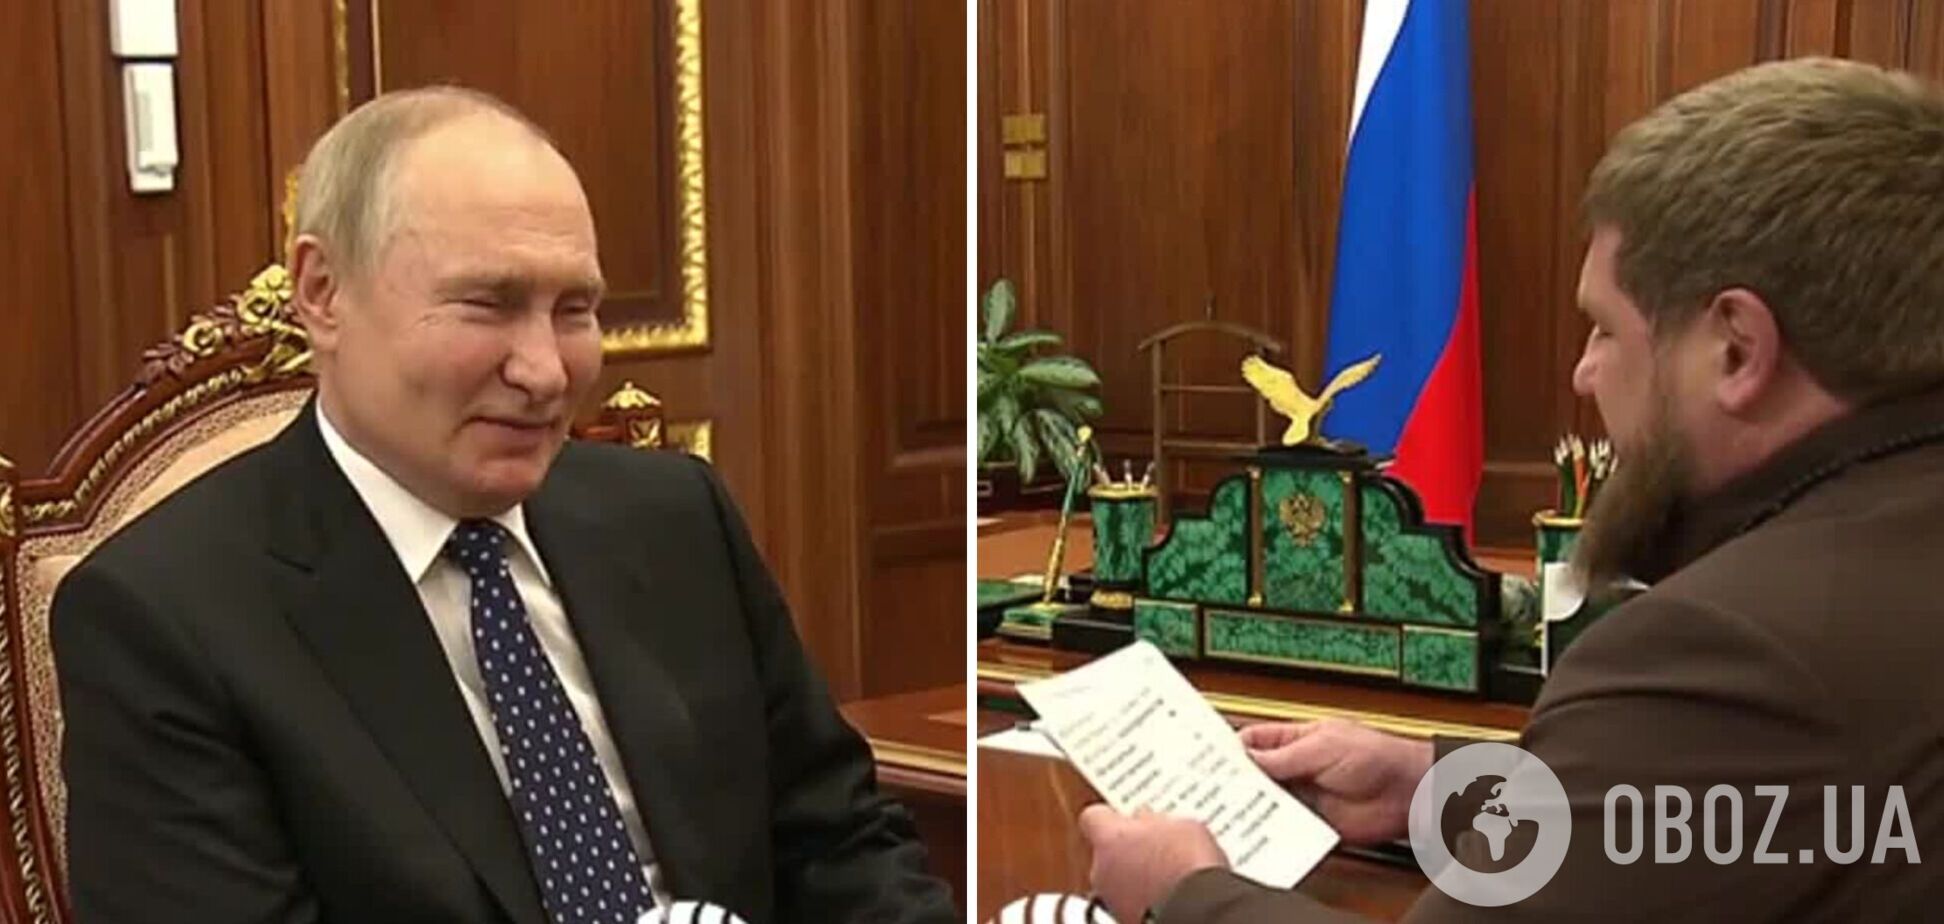 Кадыров после слухов о болезни появился на встрече с Путиным со 'шпаргалкой' об 'успехах'. Видео